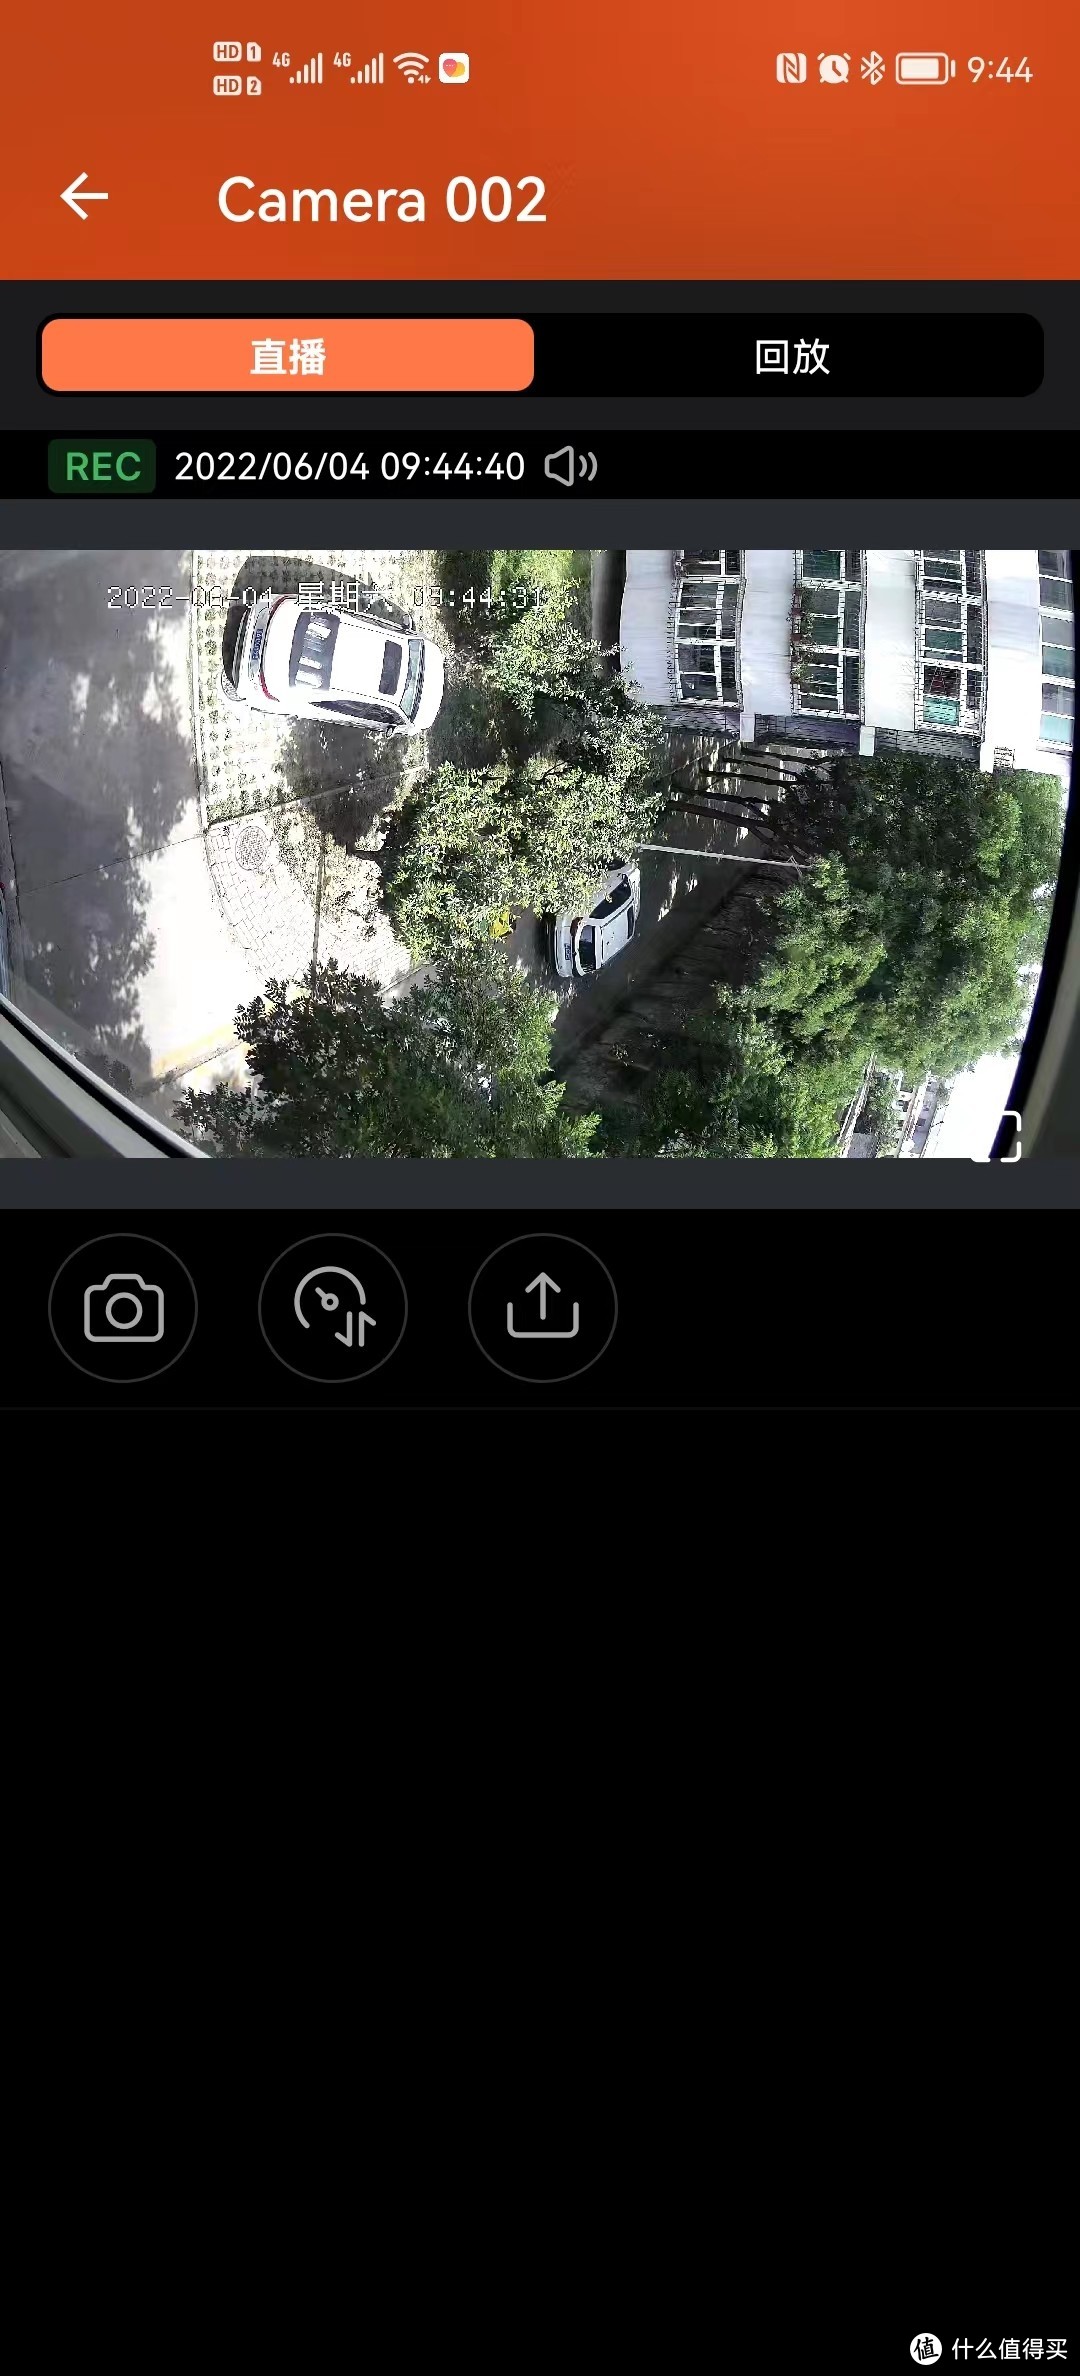 威联通上的监控软件QVR Pro手机上TP-LINK 360度全景室外防水网络监控摄像头的画面